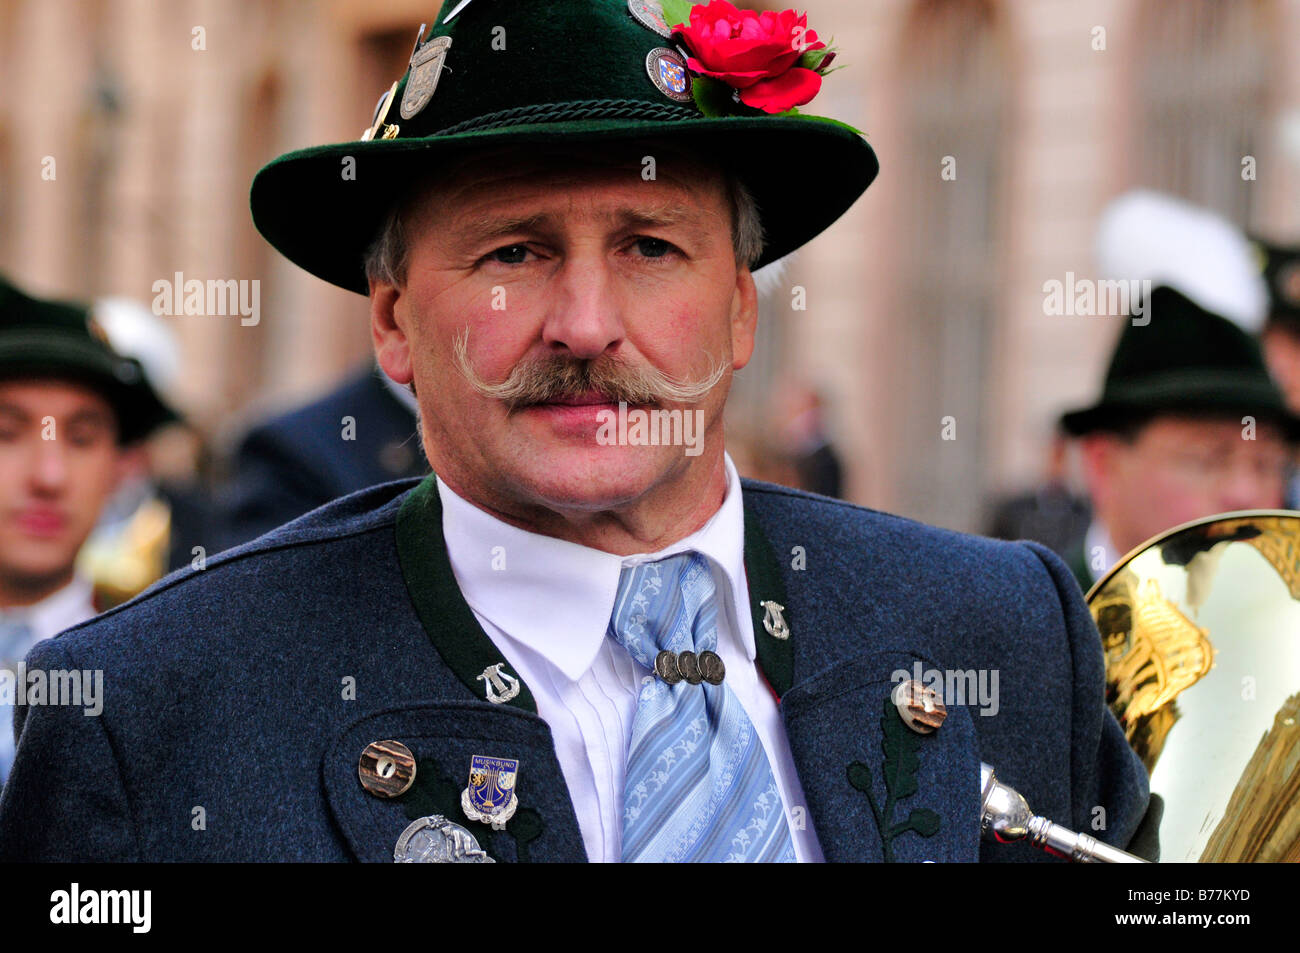 Bavarian homme portant un costume traditionnel au cours de l'Trachtenumzug, parade de costumes traditionnels, à l'Oktoberfest, Munich, Ba Banque D'Images